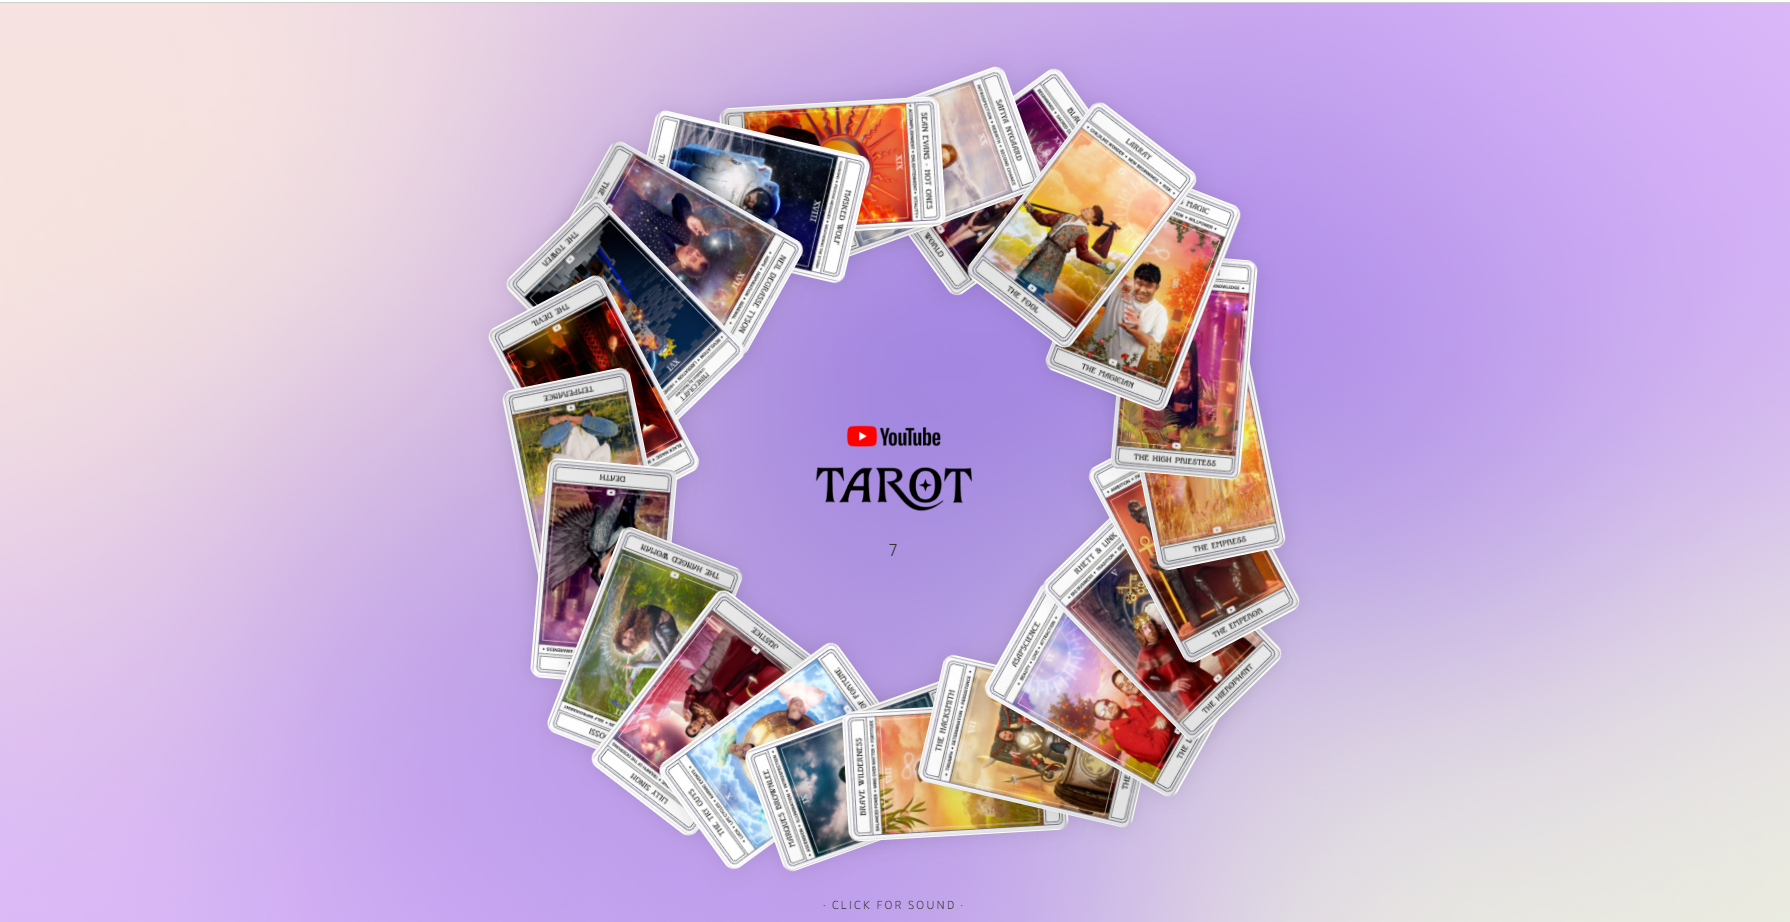 Hướng dẫn xem Tarot with YouTube miễn phí